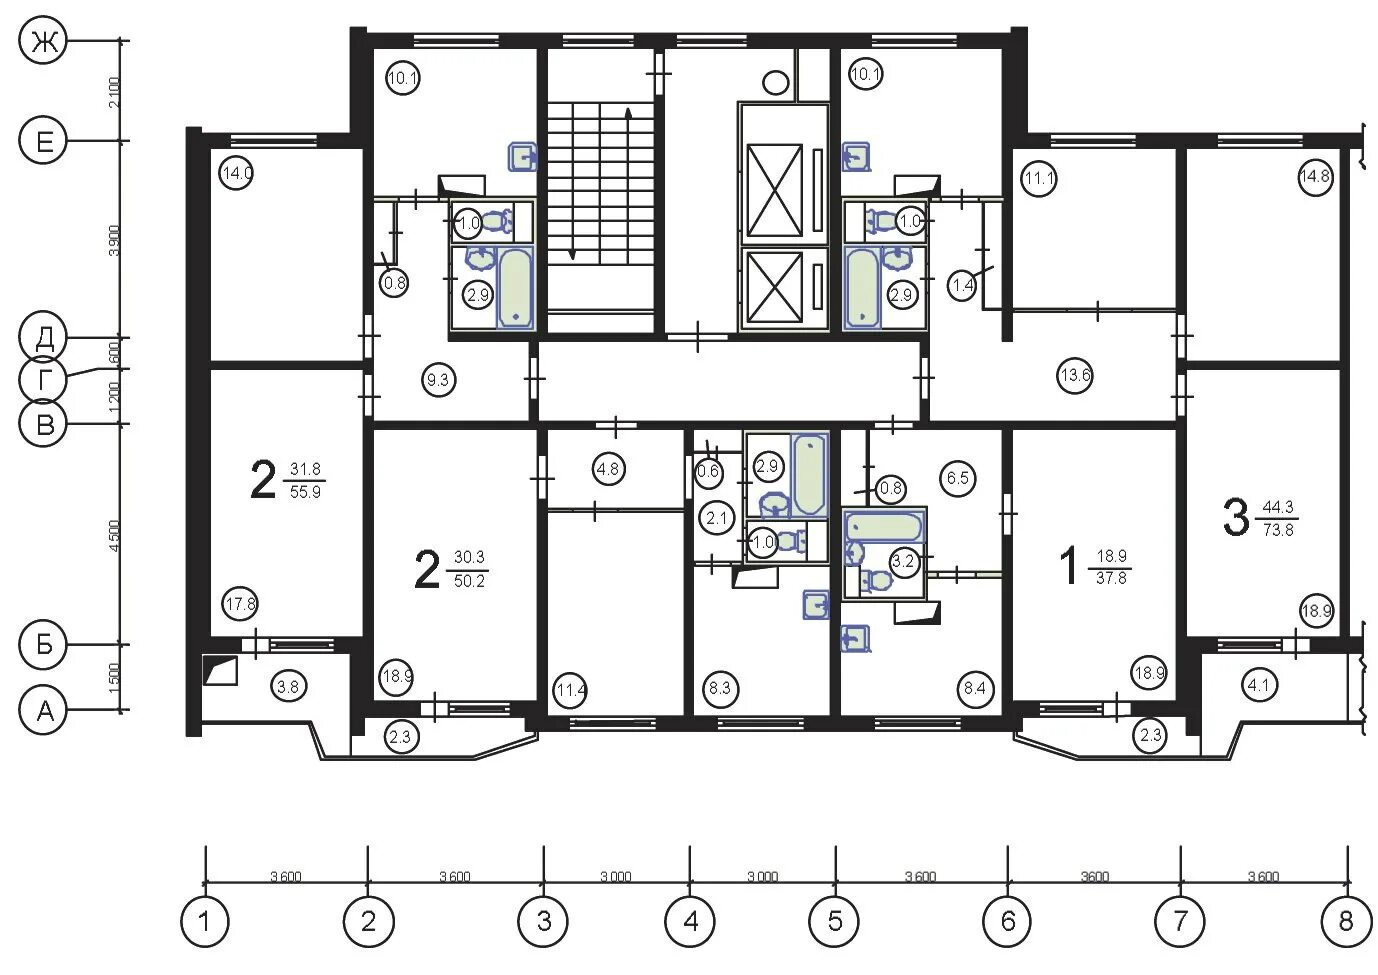 Размеры комнат в панельном доме. Планировка квартир п-44. Планировка п-44 двухкомнатная. П-44 планировка с размерами 2-х комнатная квартира.